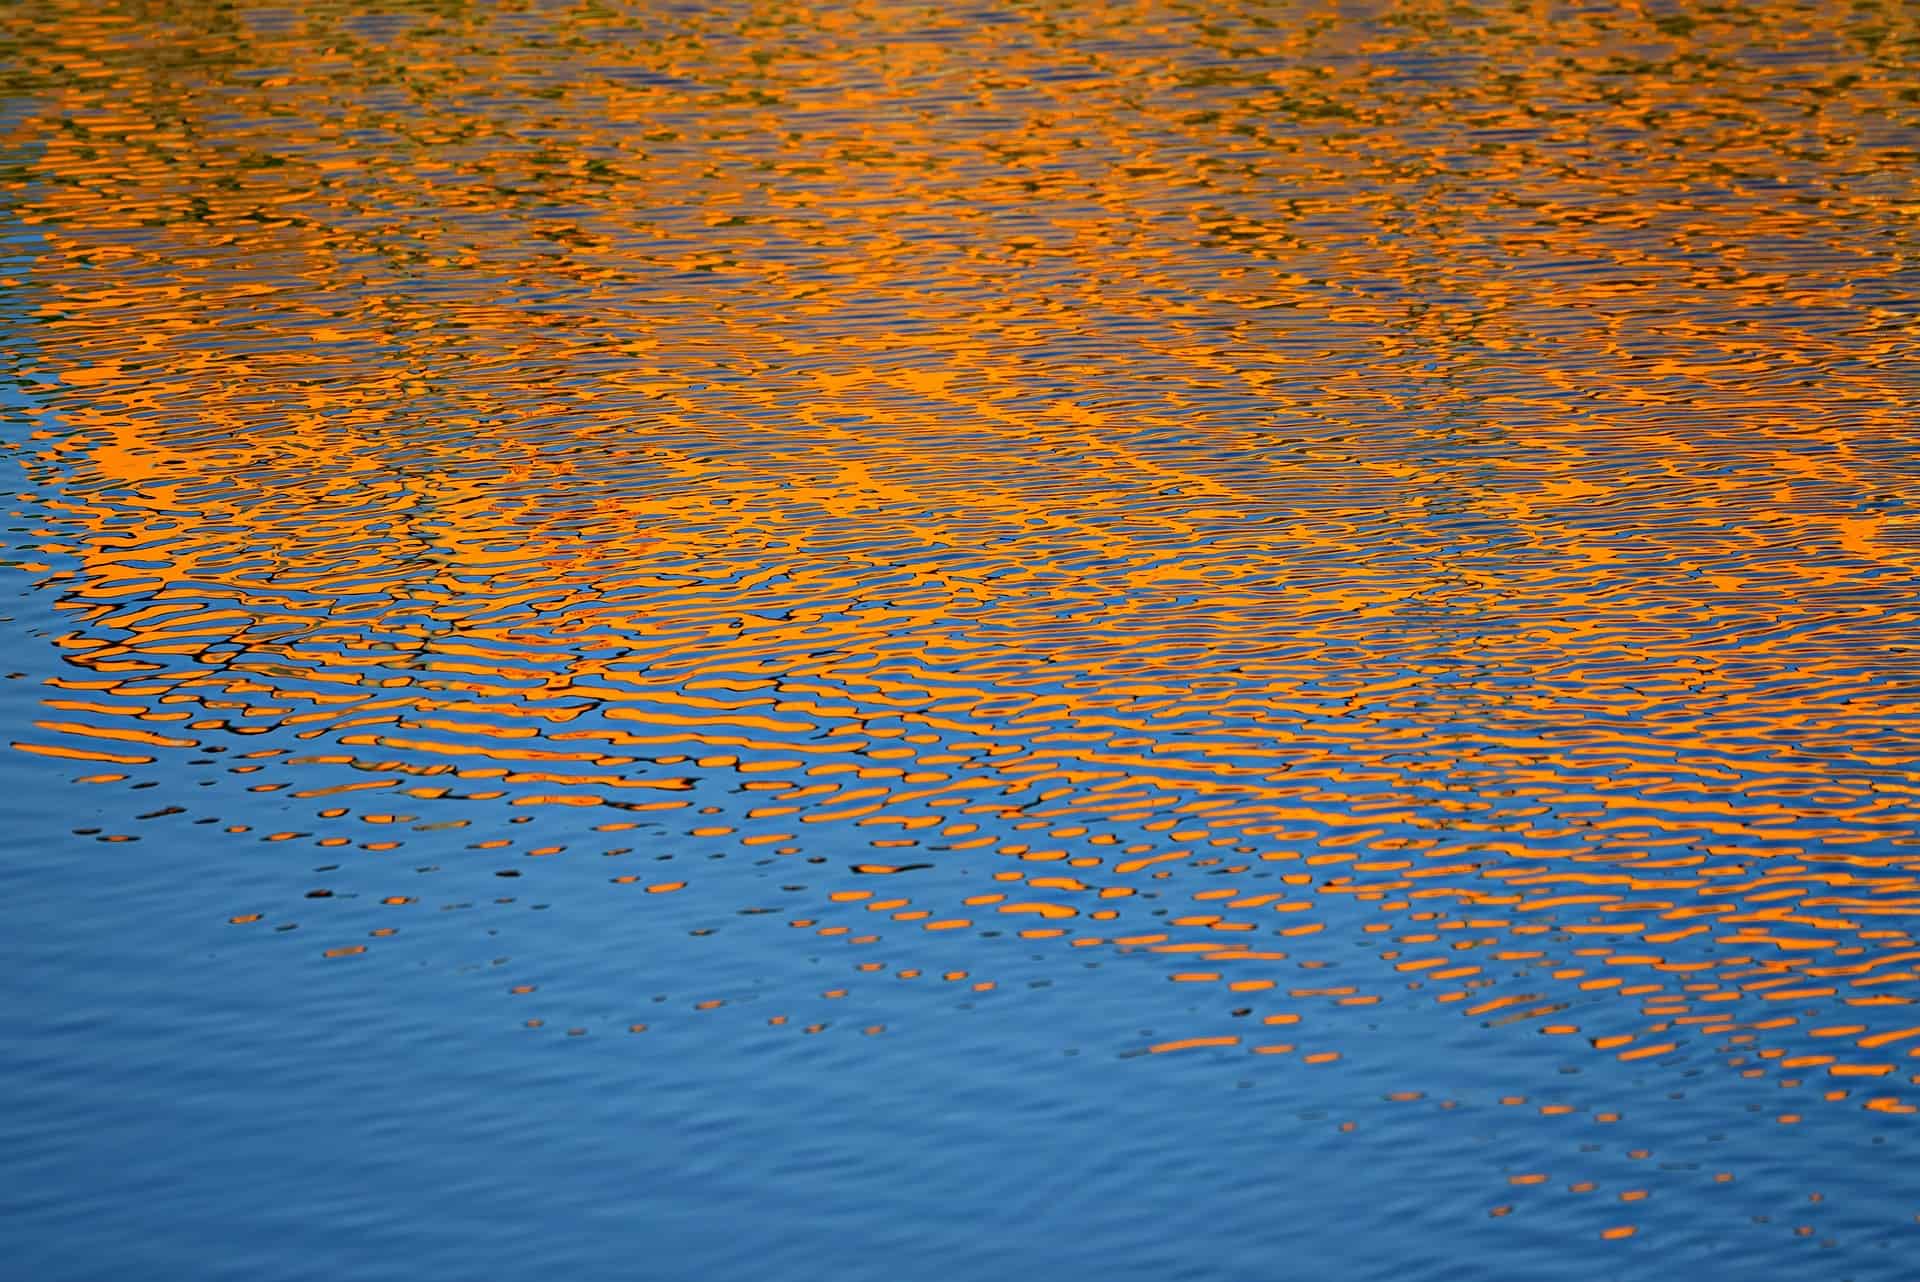 Pomarańczowy zachód słońca odbity w falującej wodzie.